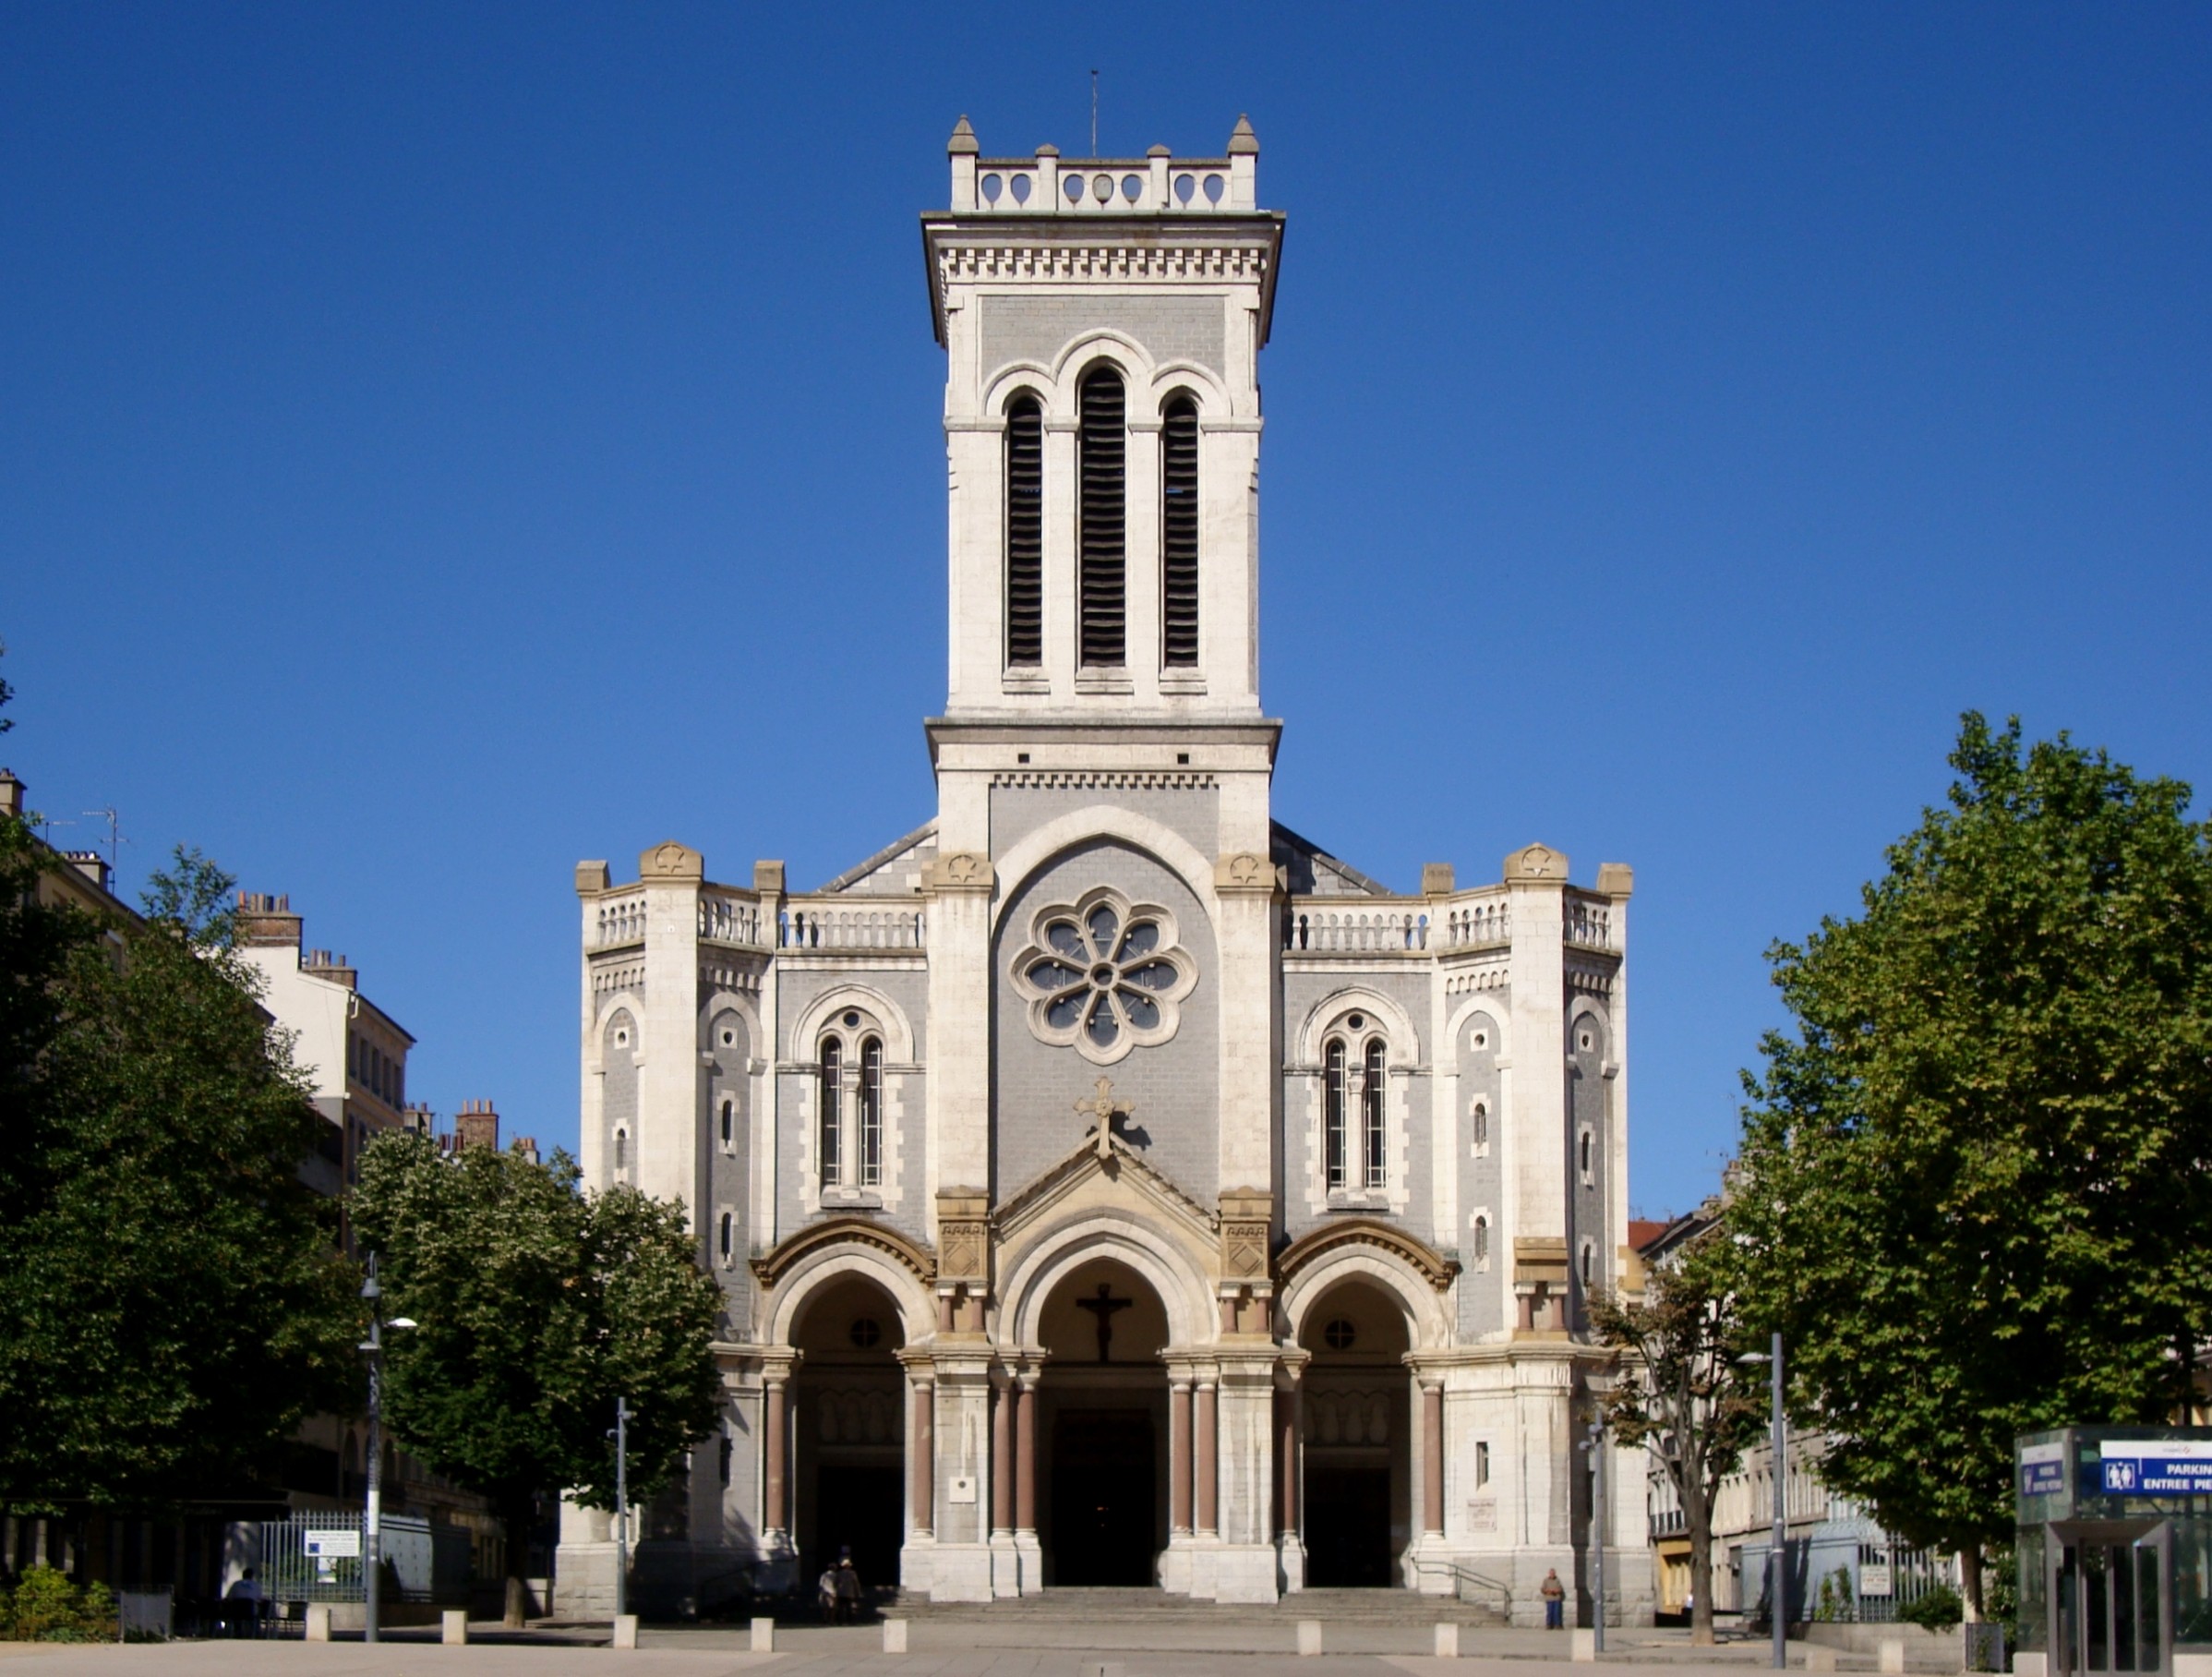 Saint Étienne Cathedral